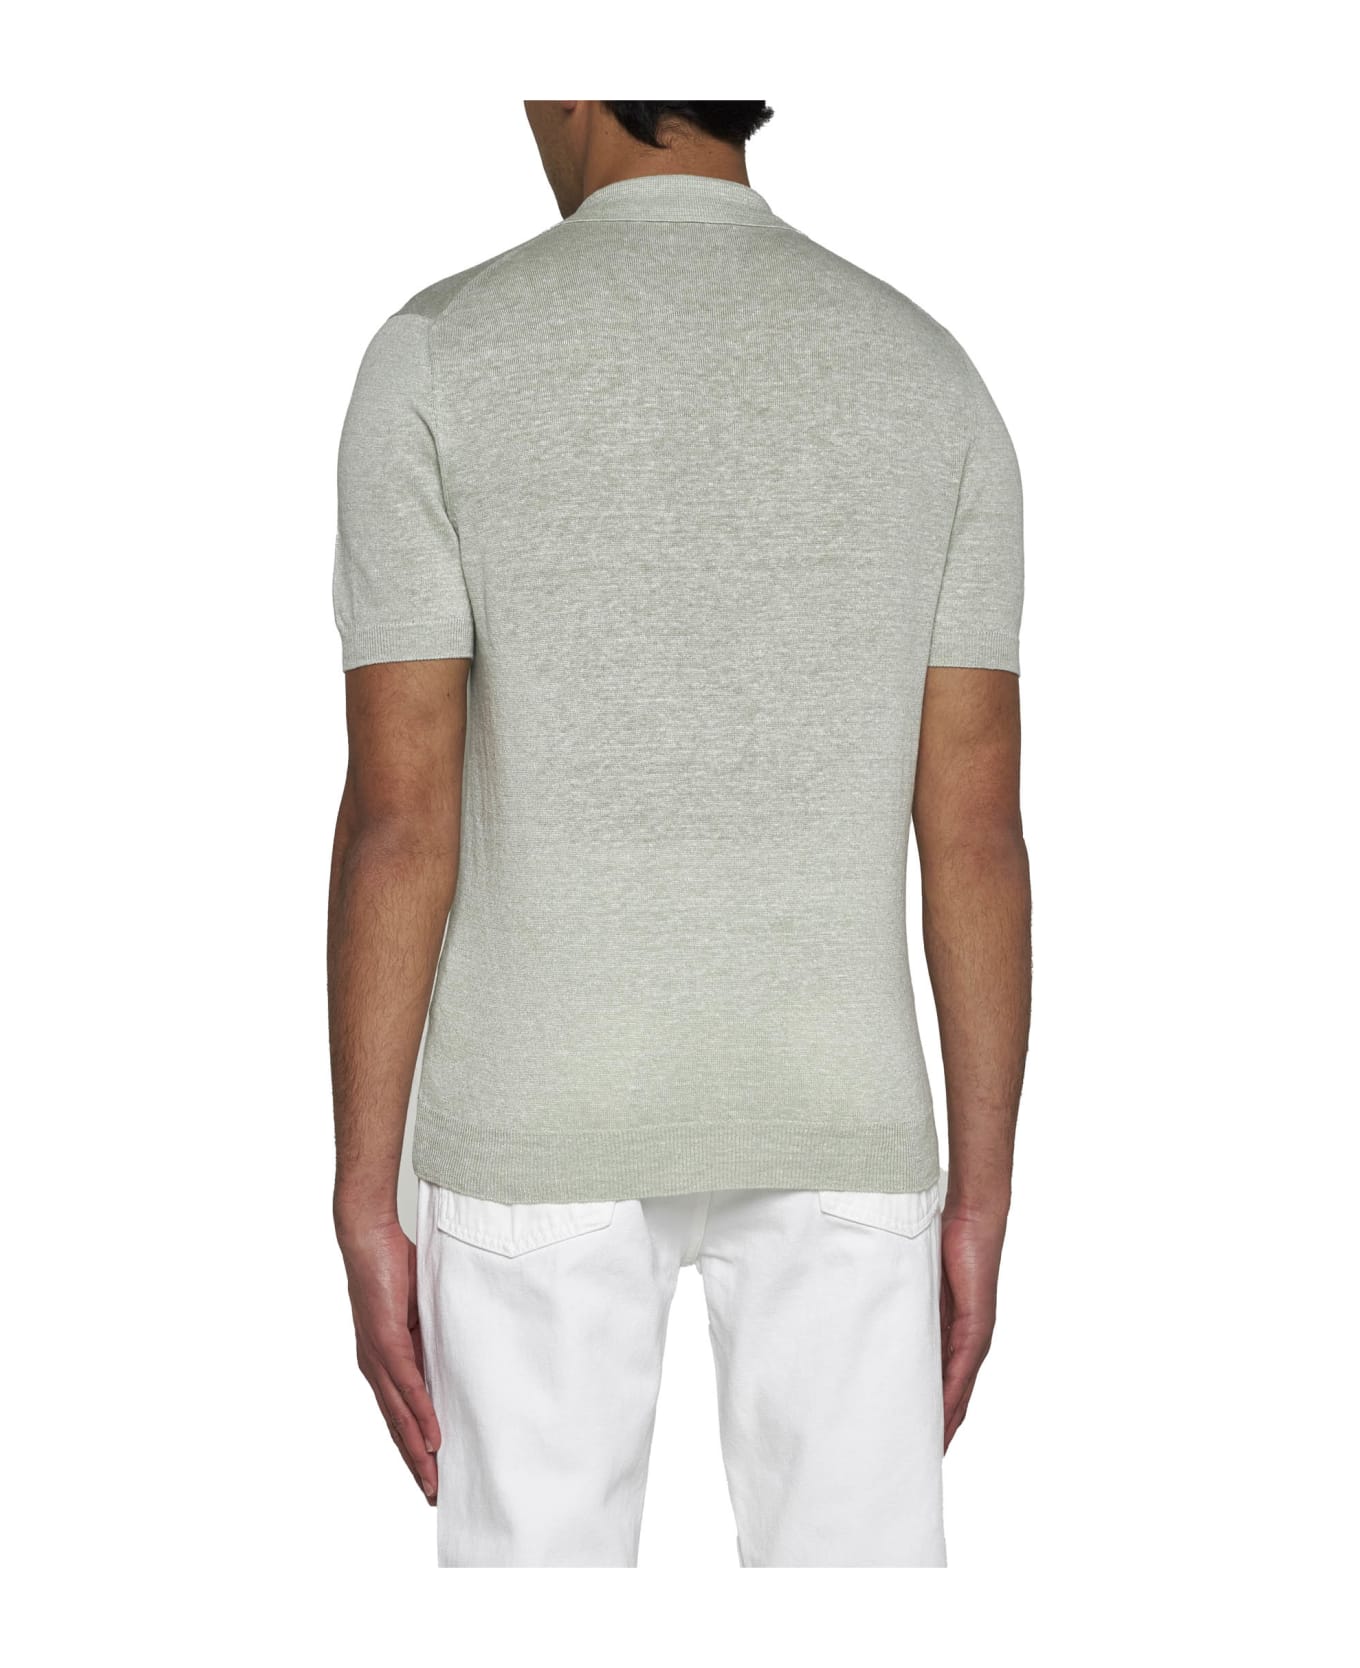 Tagliatore Polo Shirt - Verde chiaro